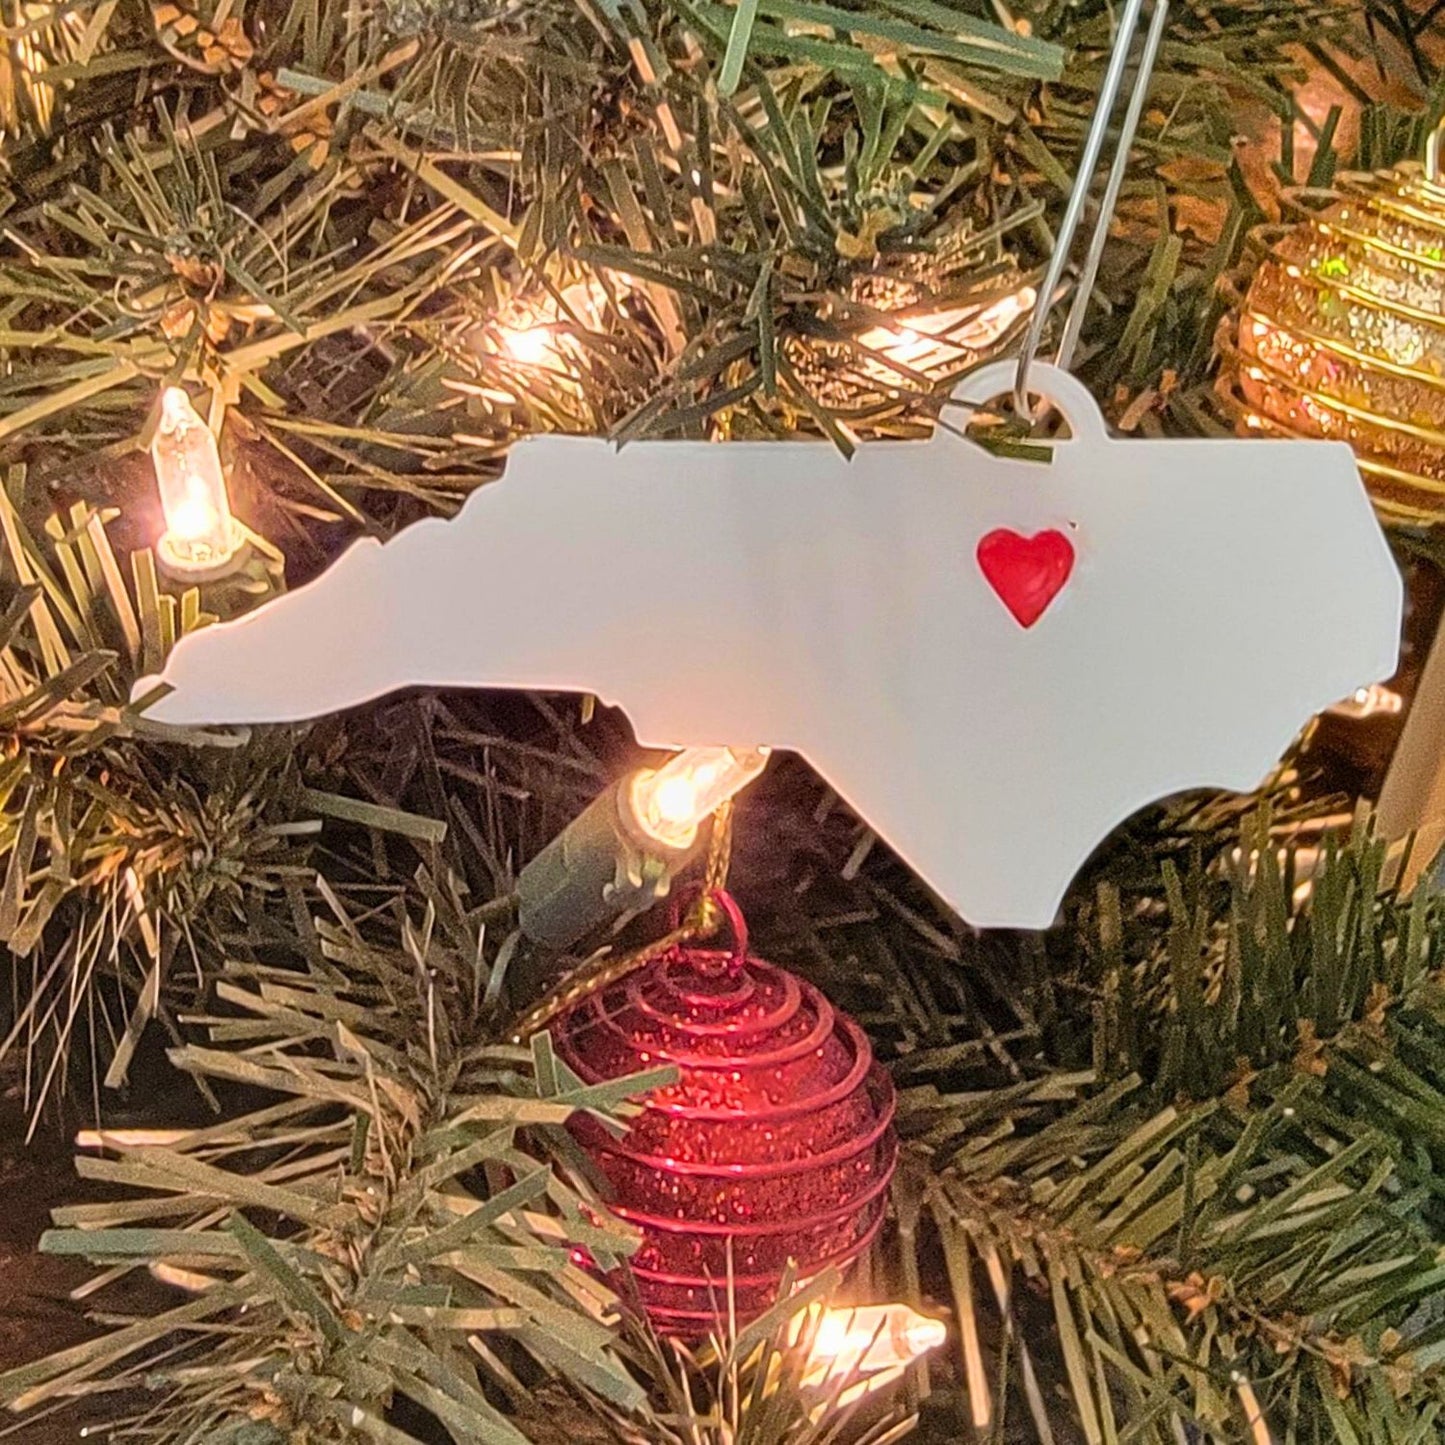 North Carolina Raleigh Heart Hanging Christmas Ornament USA PR5113